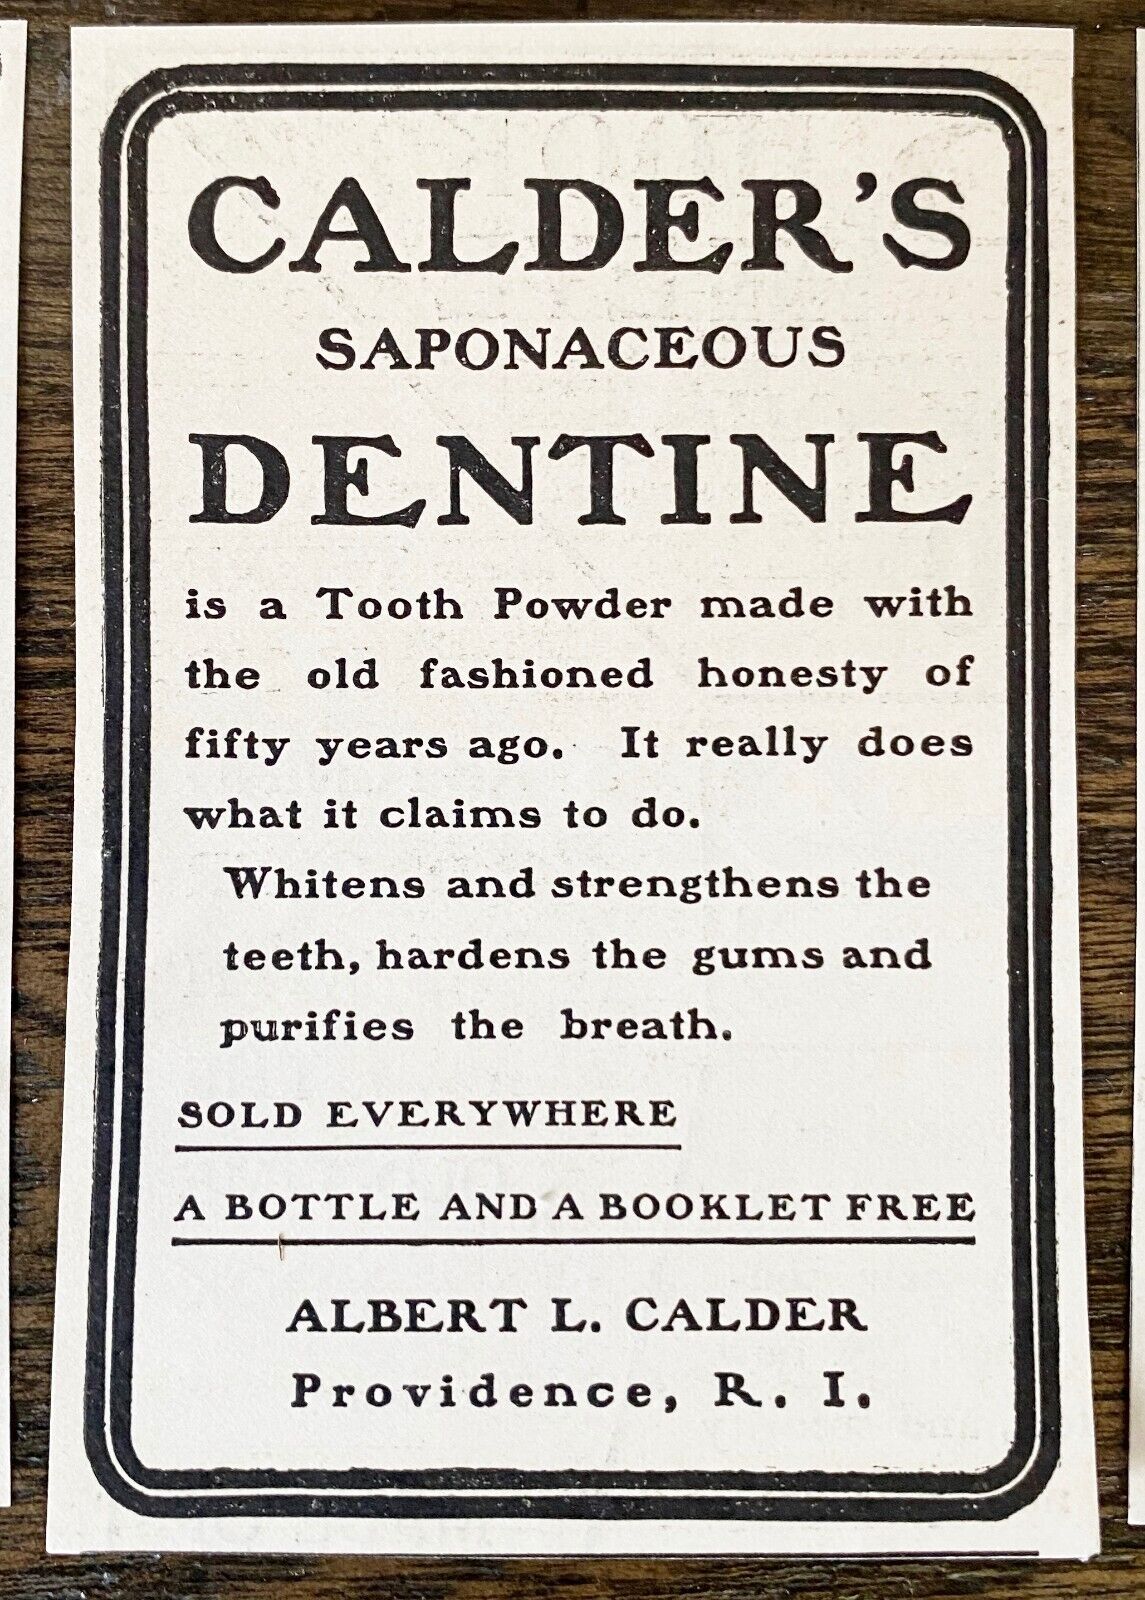 Antique 1890s CALDER'S DENTINE Tooth Powder Dentifrice Typography Print Ad Lot10 Без бренда - фотография #10